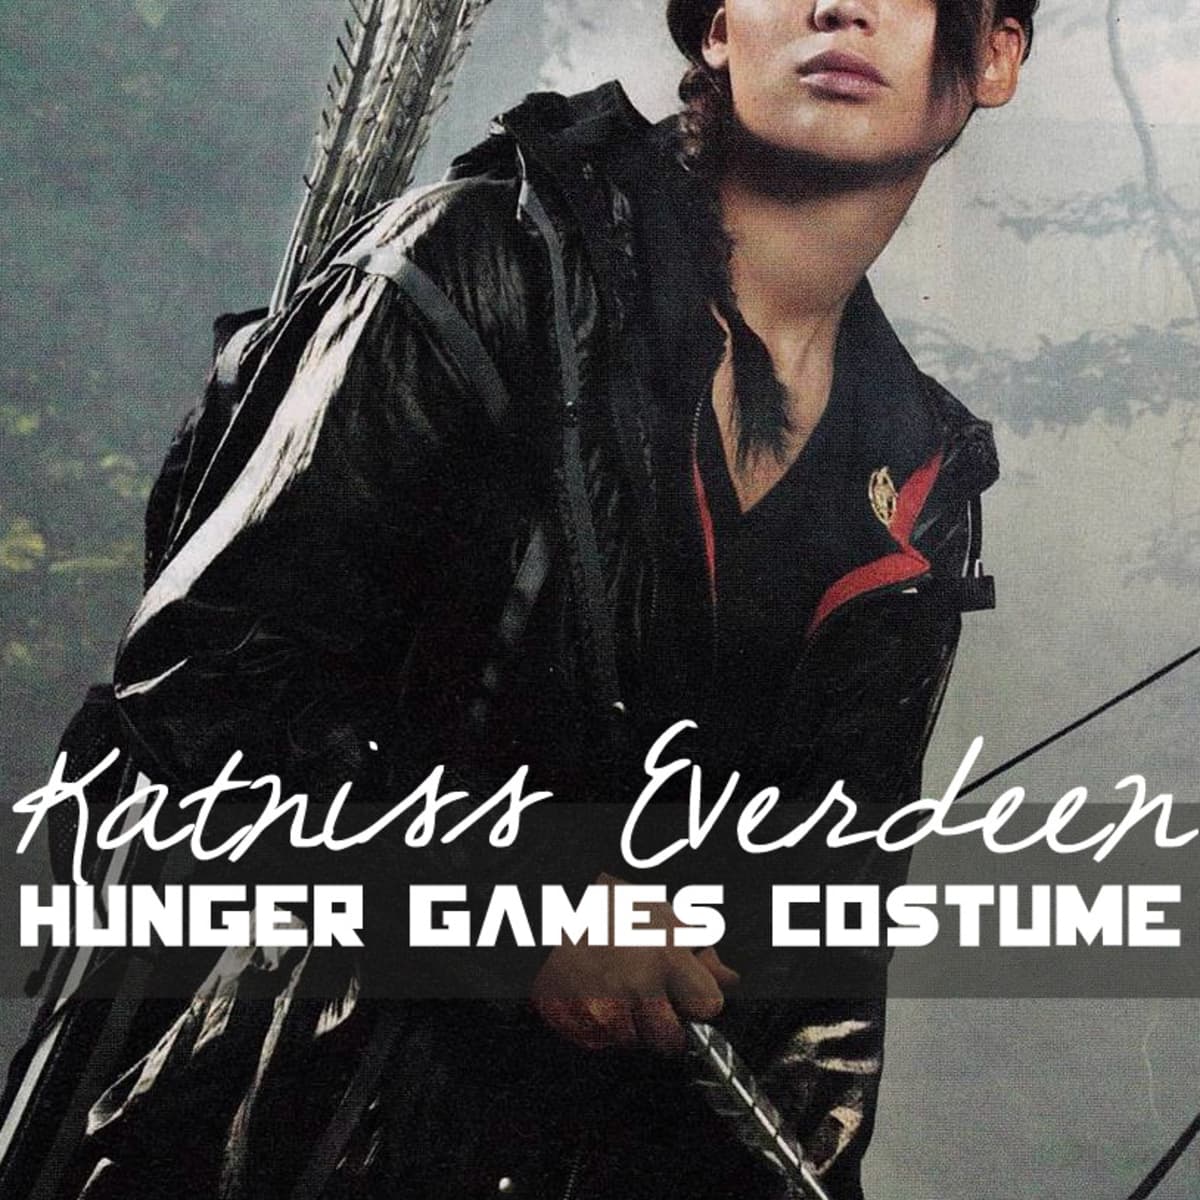 katniss everdeen full body poster